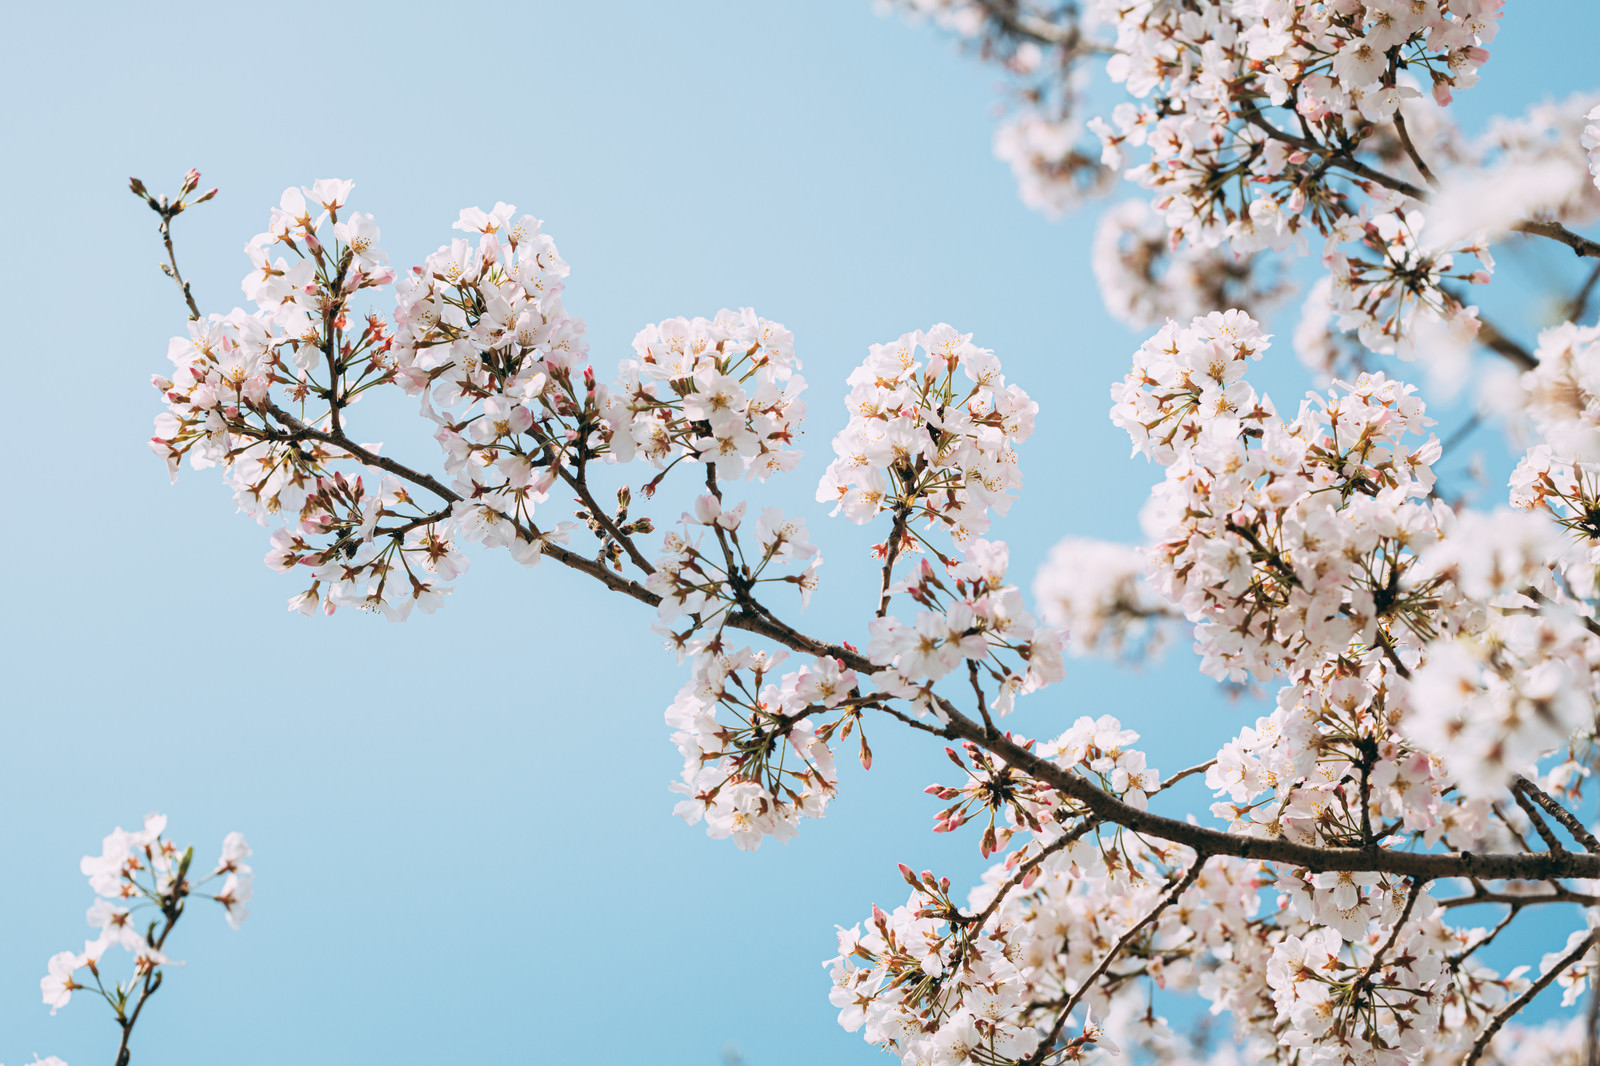 「桜満開の季節 | フリー素材のぱくたそ」の写真